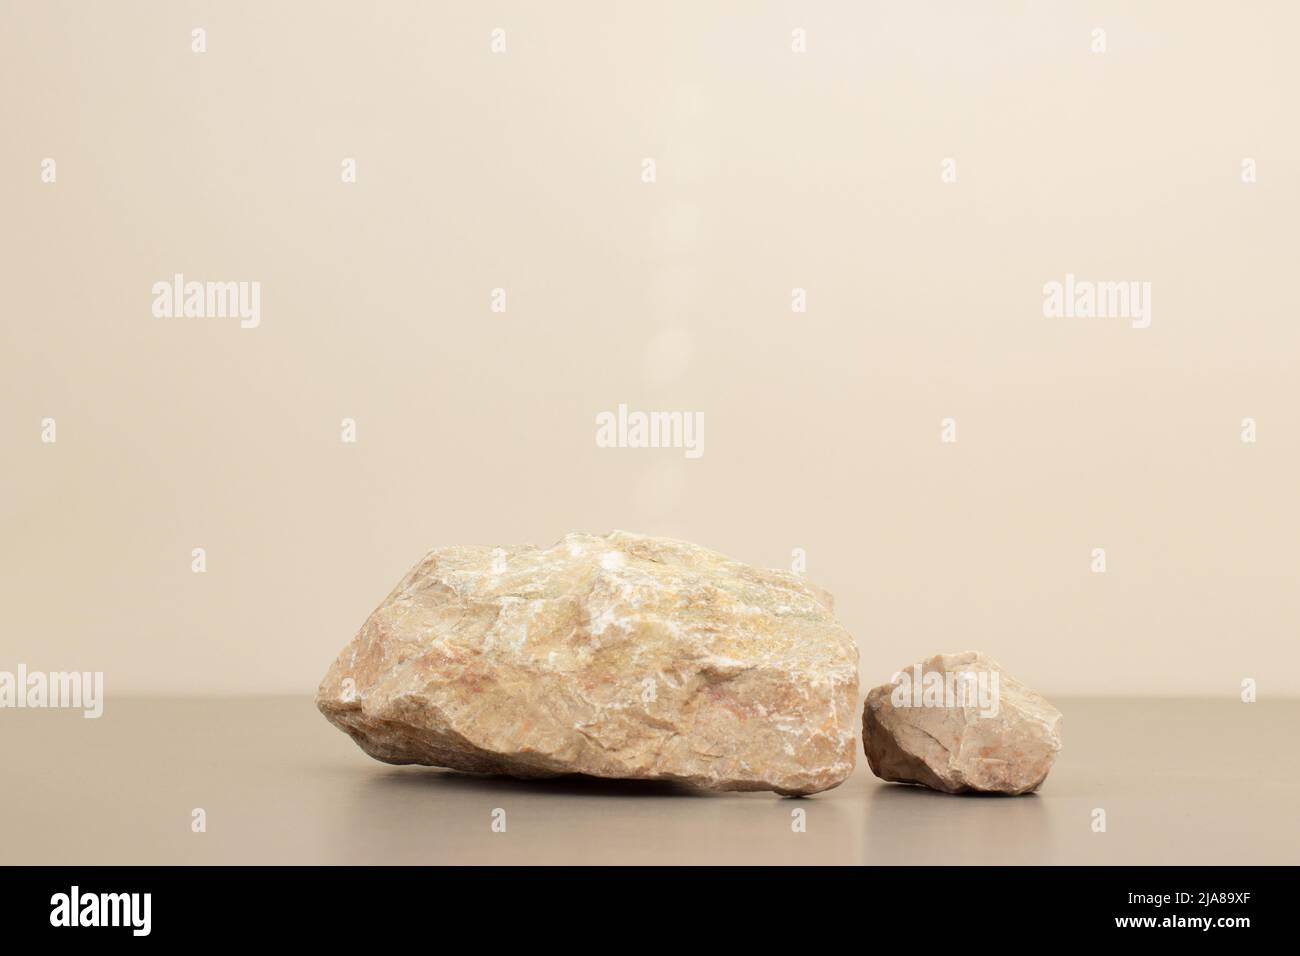 vide nature pierre podium minimalisme sur fond beige clair. Copier l'espace, placer pour le texte Banque D'Images